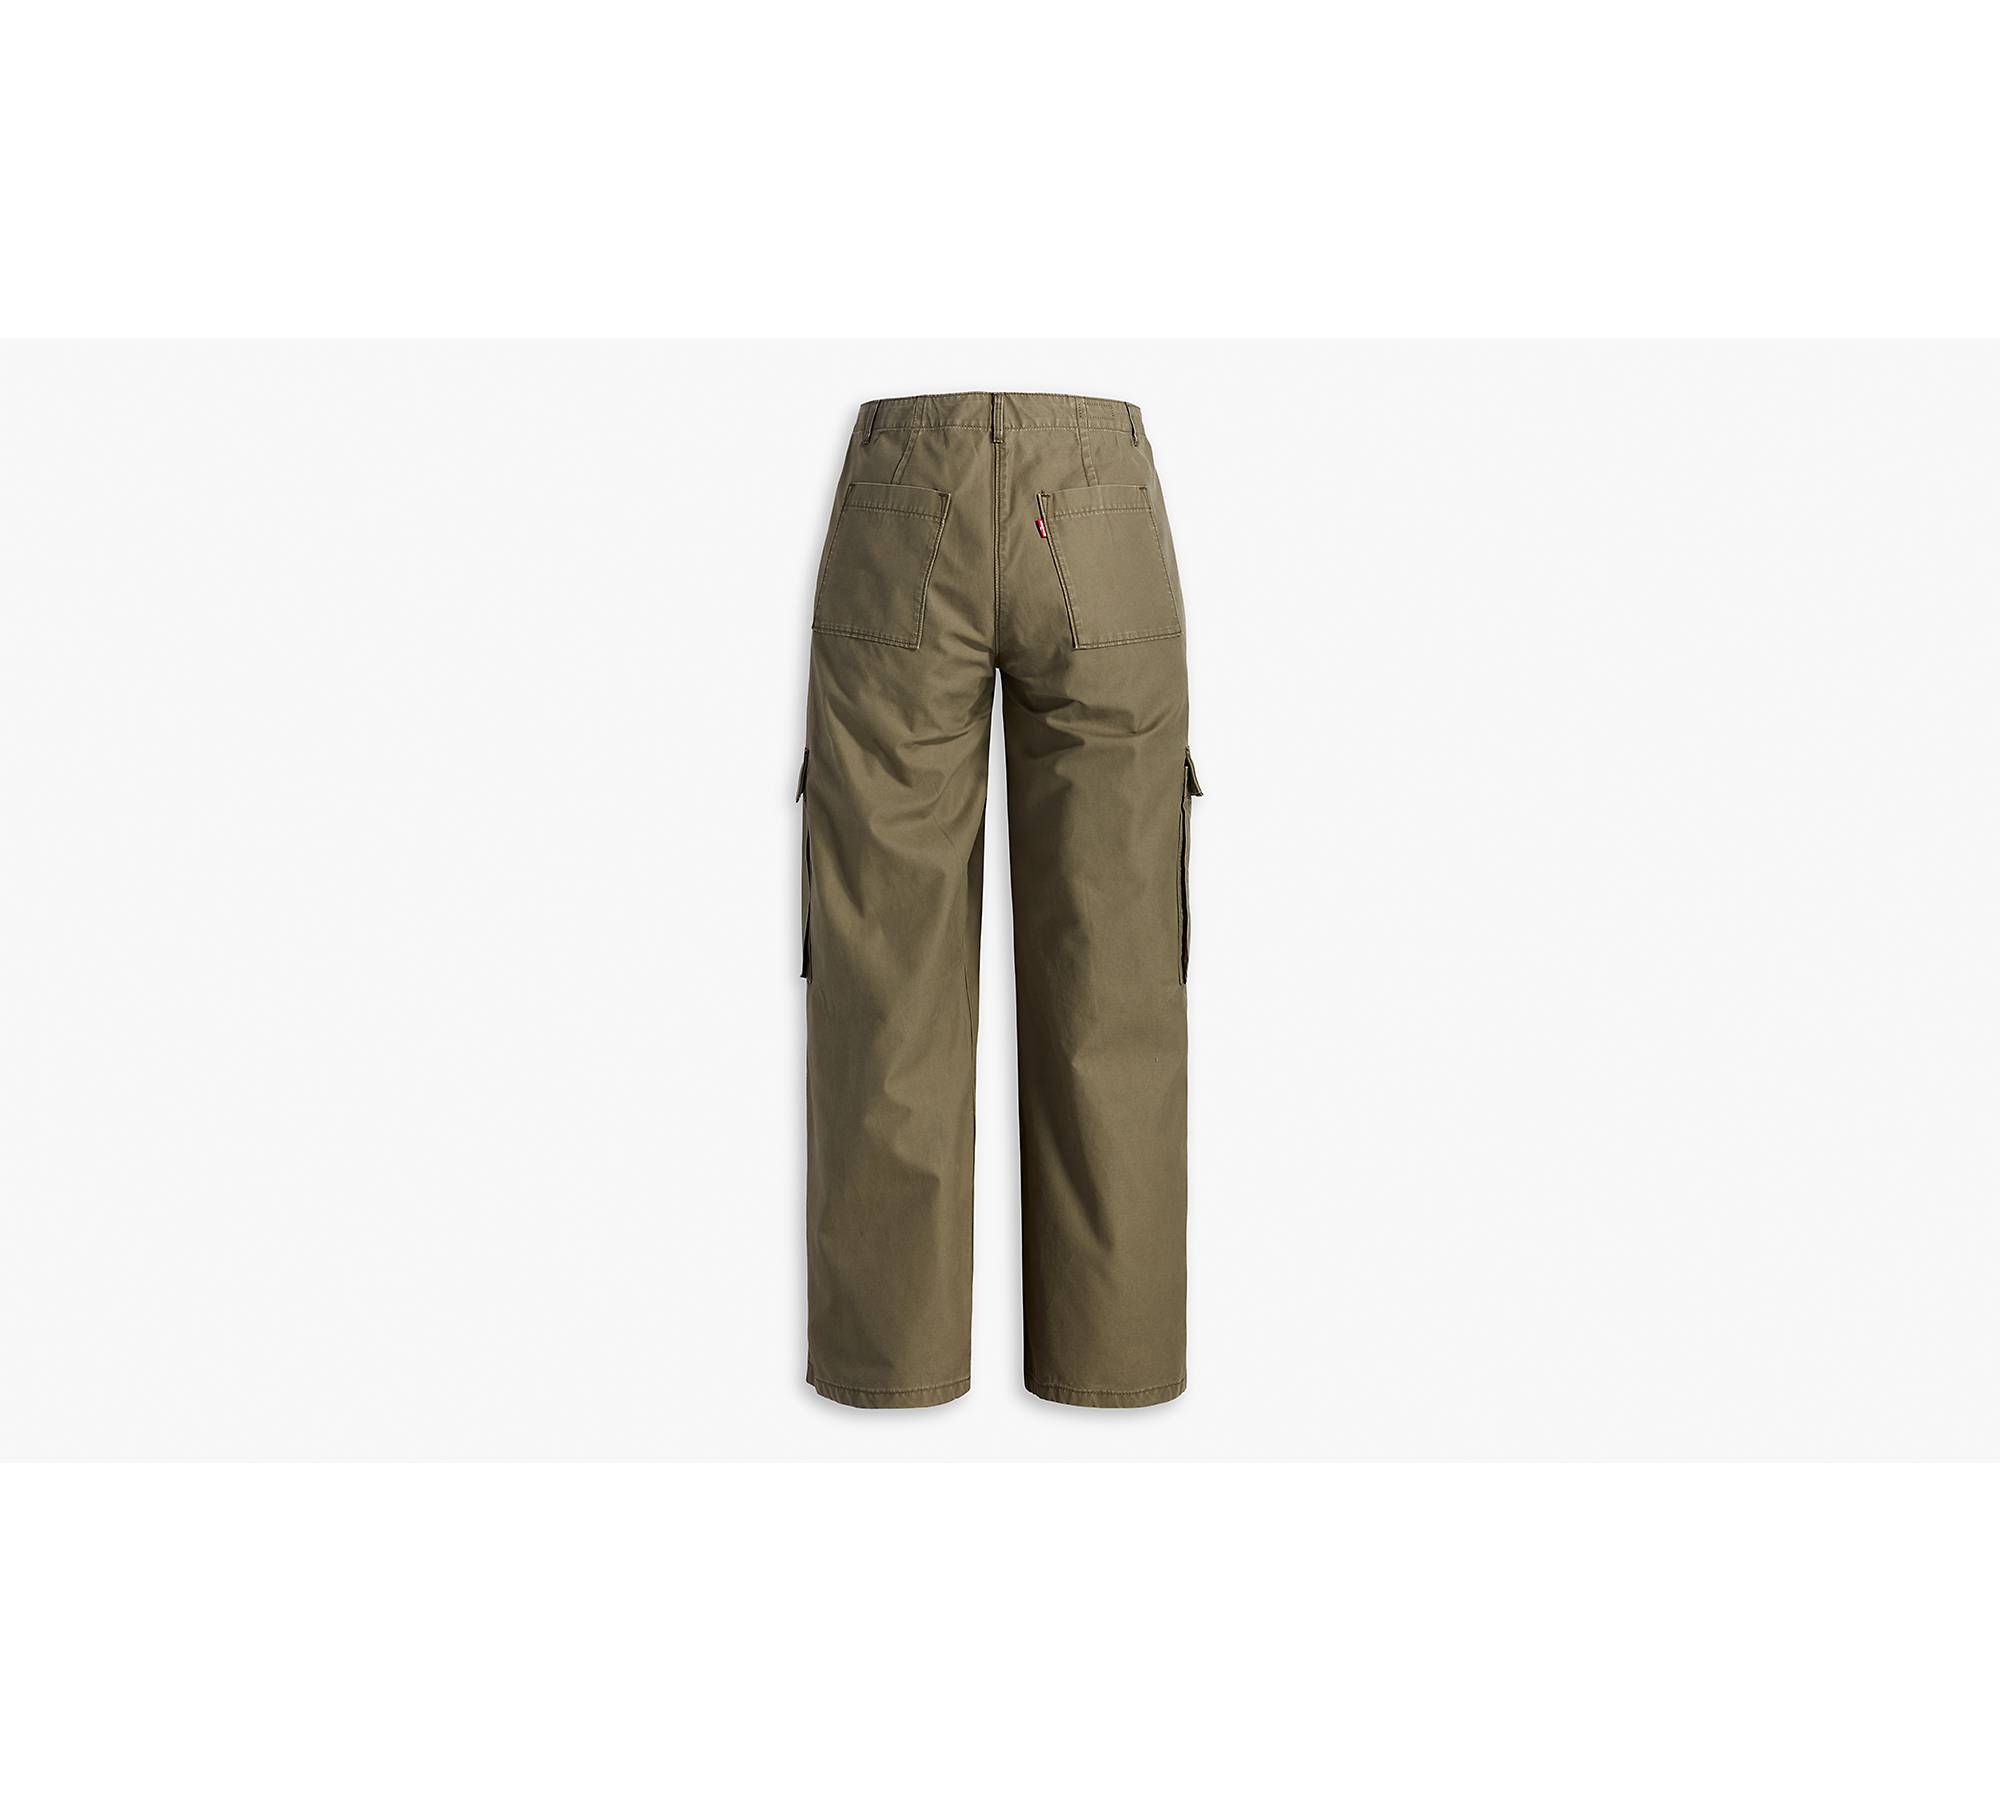 COPY - Allison Brittney 100% Cotton Women's Green Cargo Capri Pants Size 12